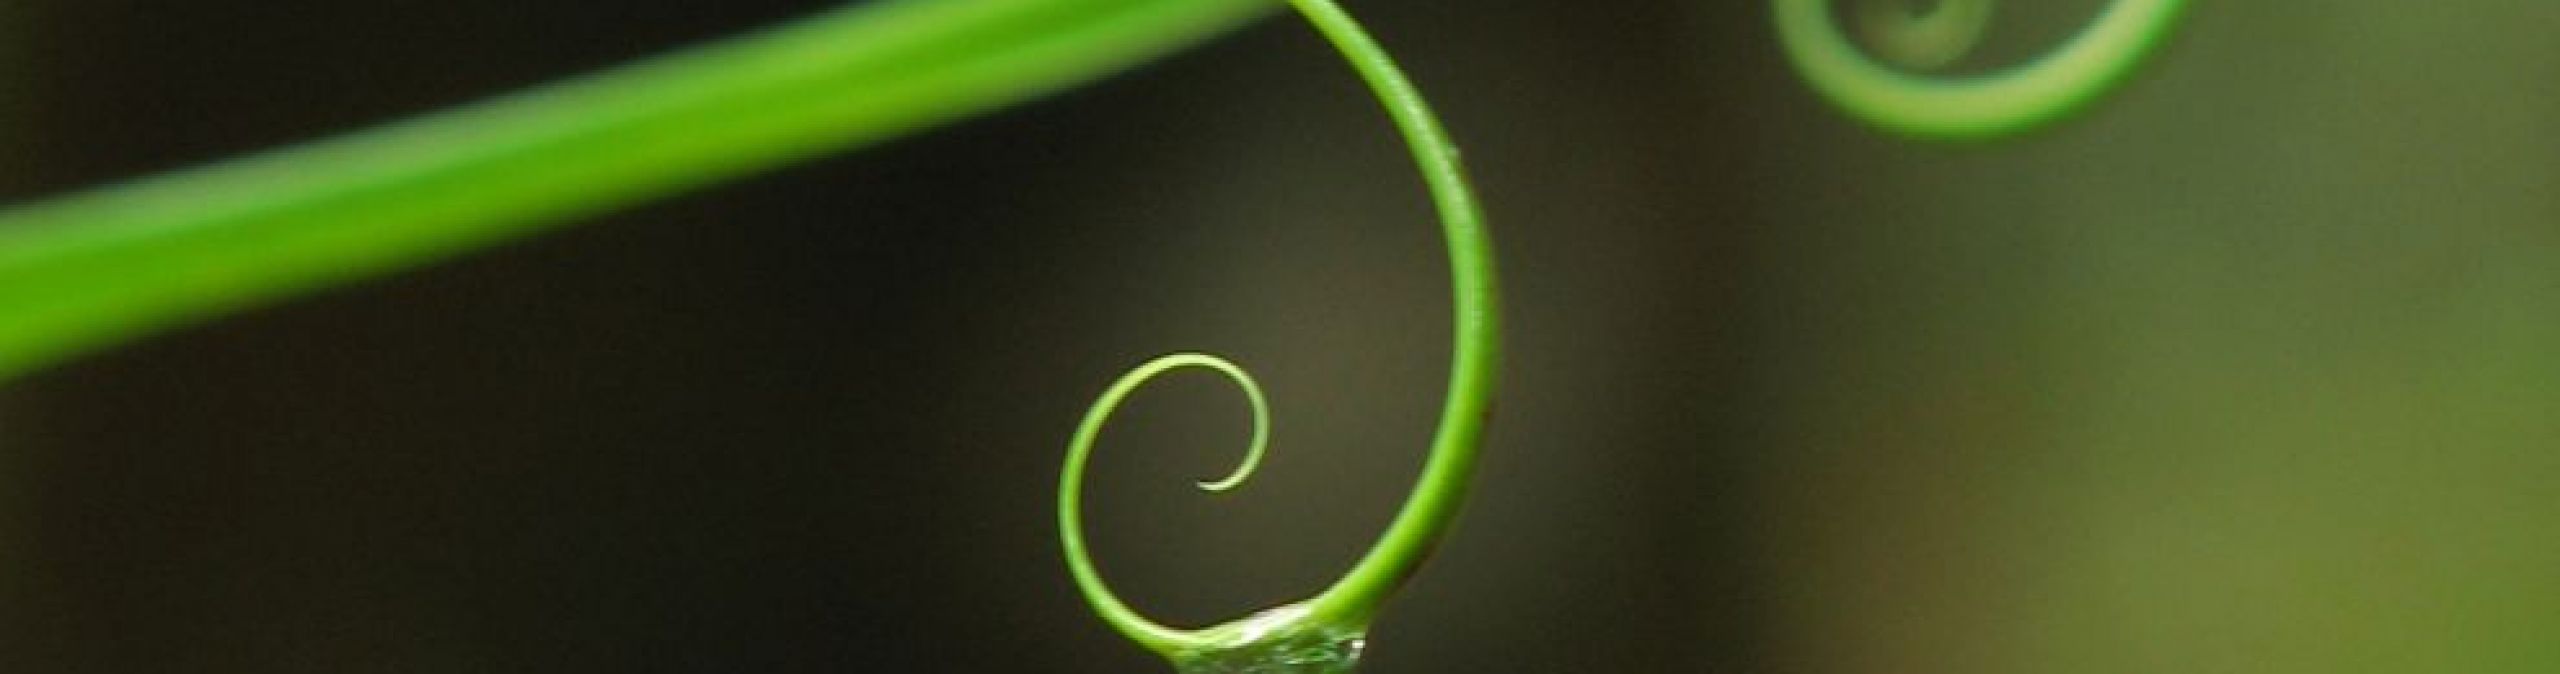 Leaf drip tips
Photographer: Jason McCall